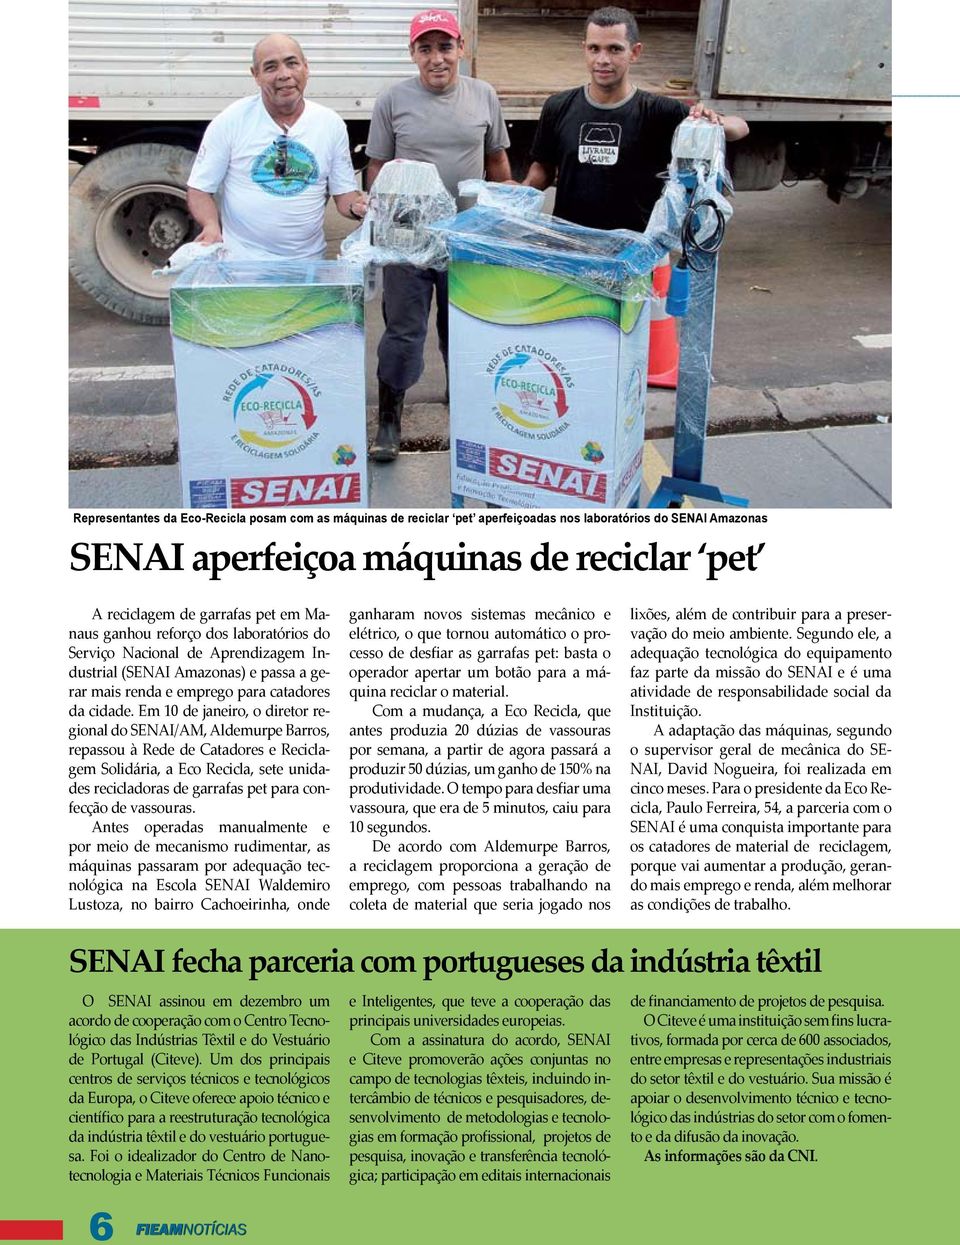 Em 10 de janeiro, o diretor regional do SENAI/AM, Aldemurpe Barros, repassou à Rede de Catadores e Reciclagem Solidária, a Eco Recicla, sete unidades recicladoras de garrafas pet para confecção de